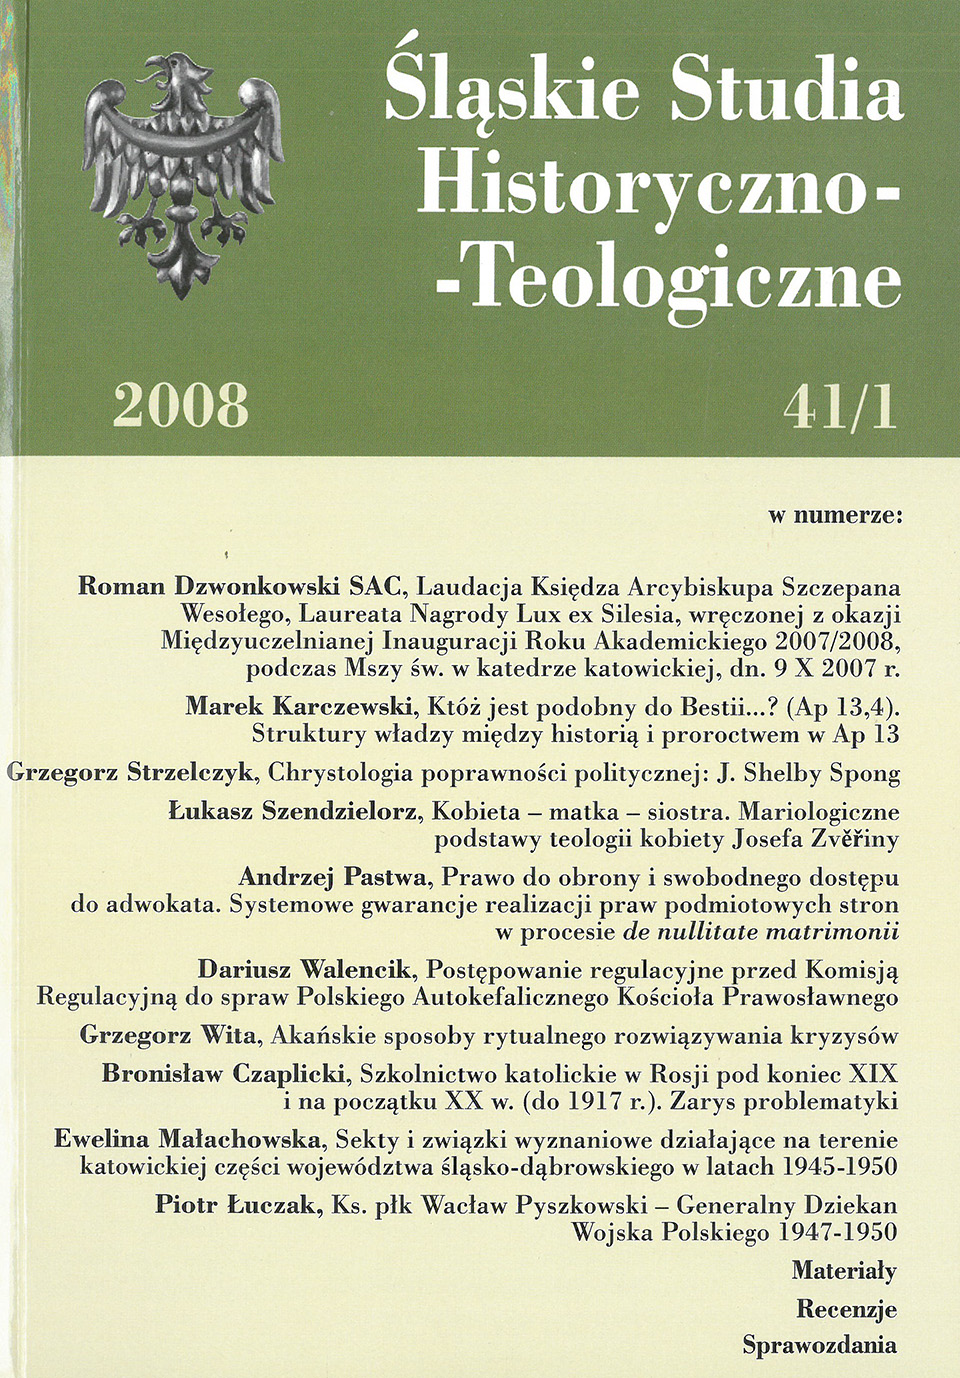 Śląskie Studia Historyczno-Teologiczne (41/1, 2008)